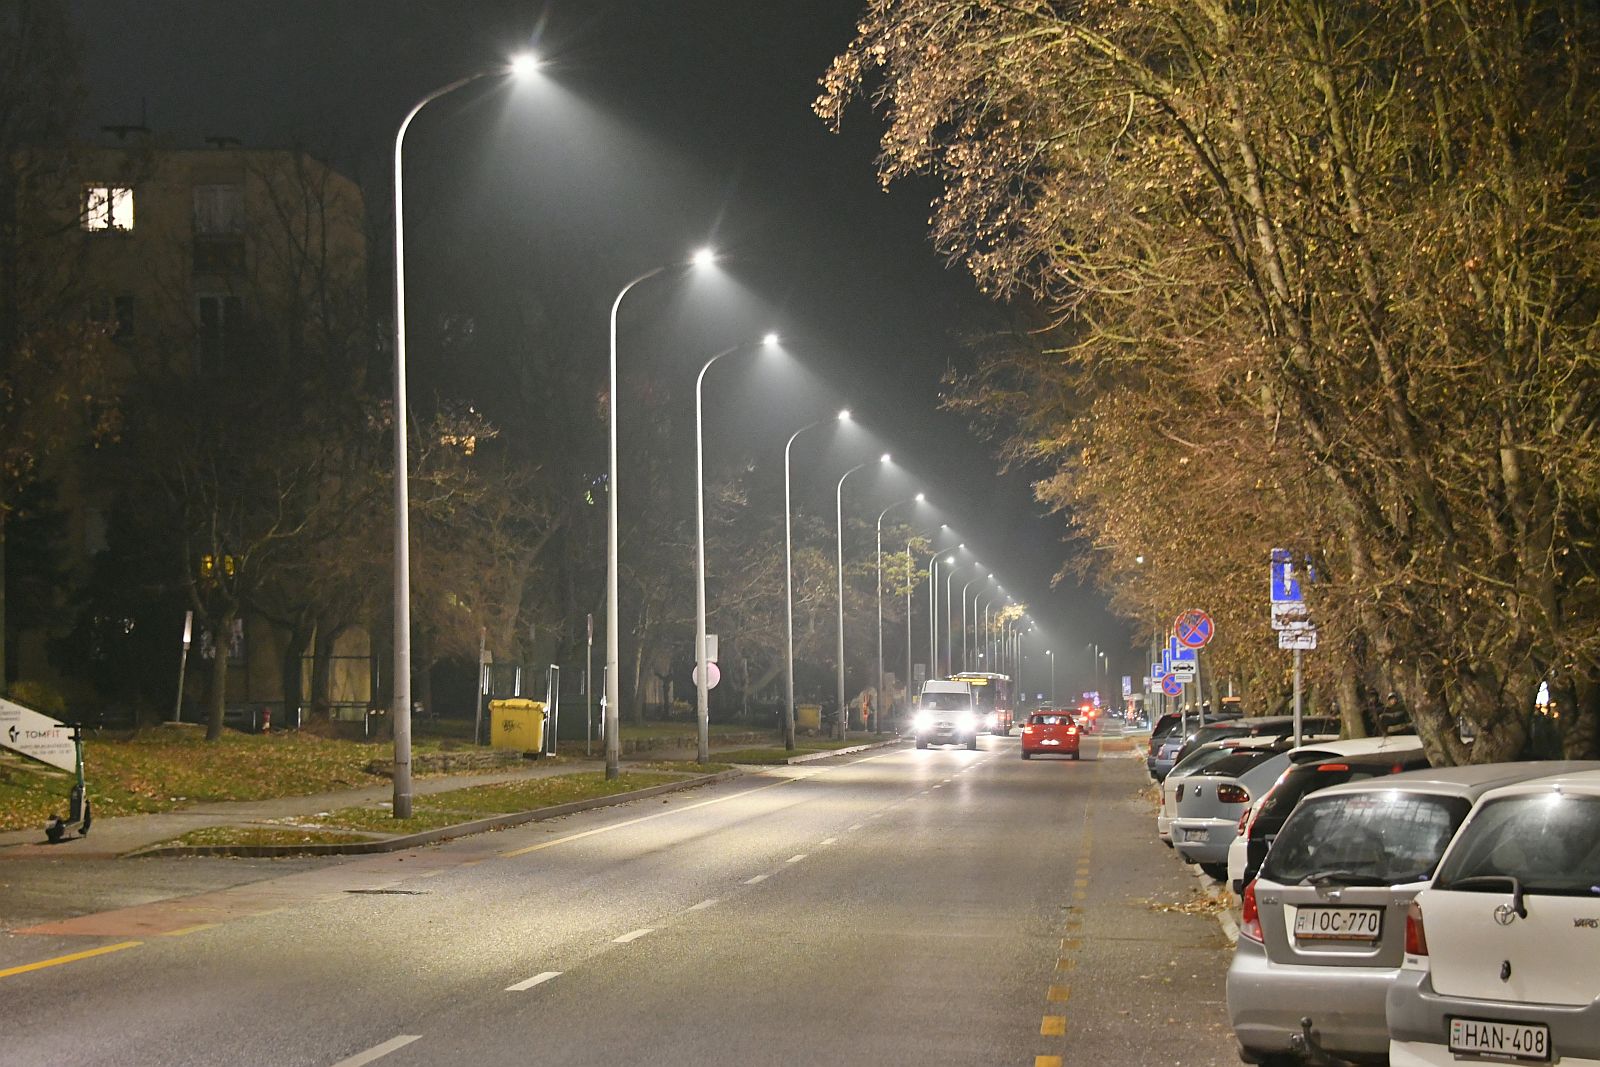 Közvilágítás-fejlesztés Székesfehérváron - több mint 11 ezer lámpatestet cseréltek